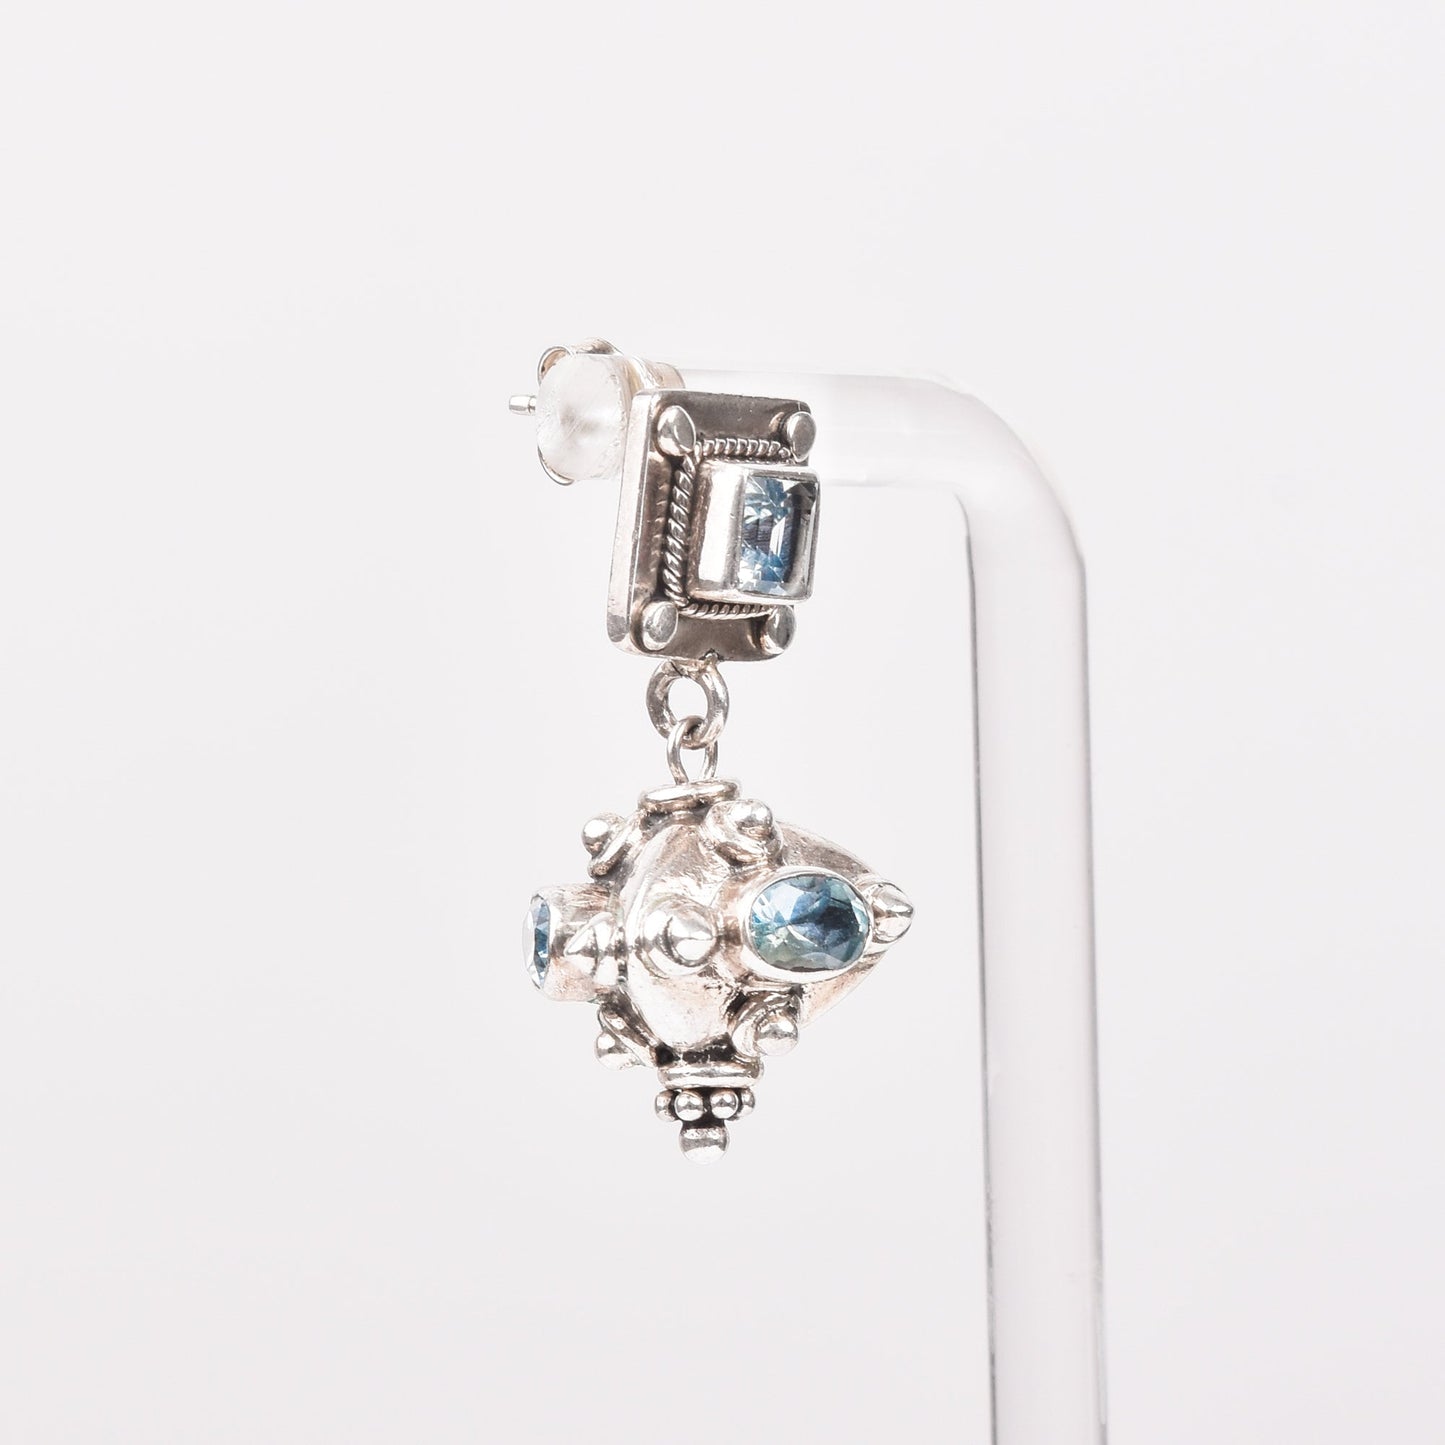 Bali-Style Sterling Silver Blue Topaz Earrings, Small Chunky Pierced Dangle Earrings,  1.25" L